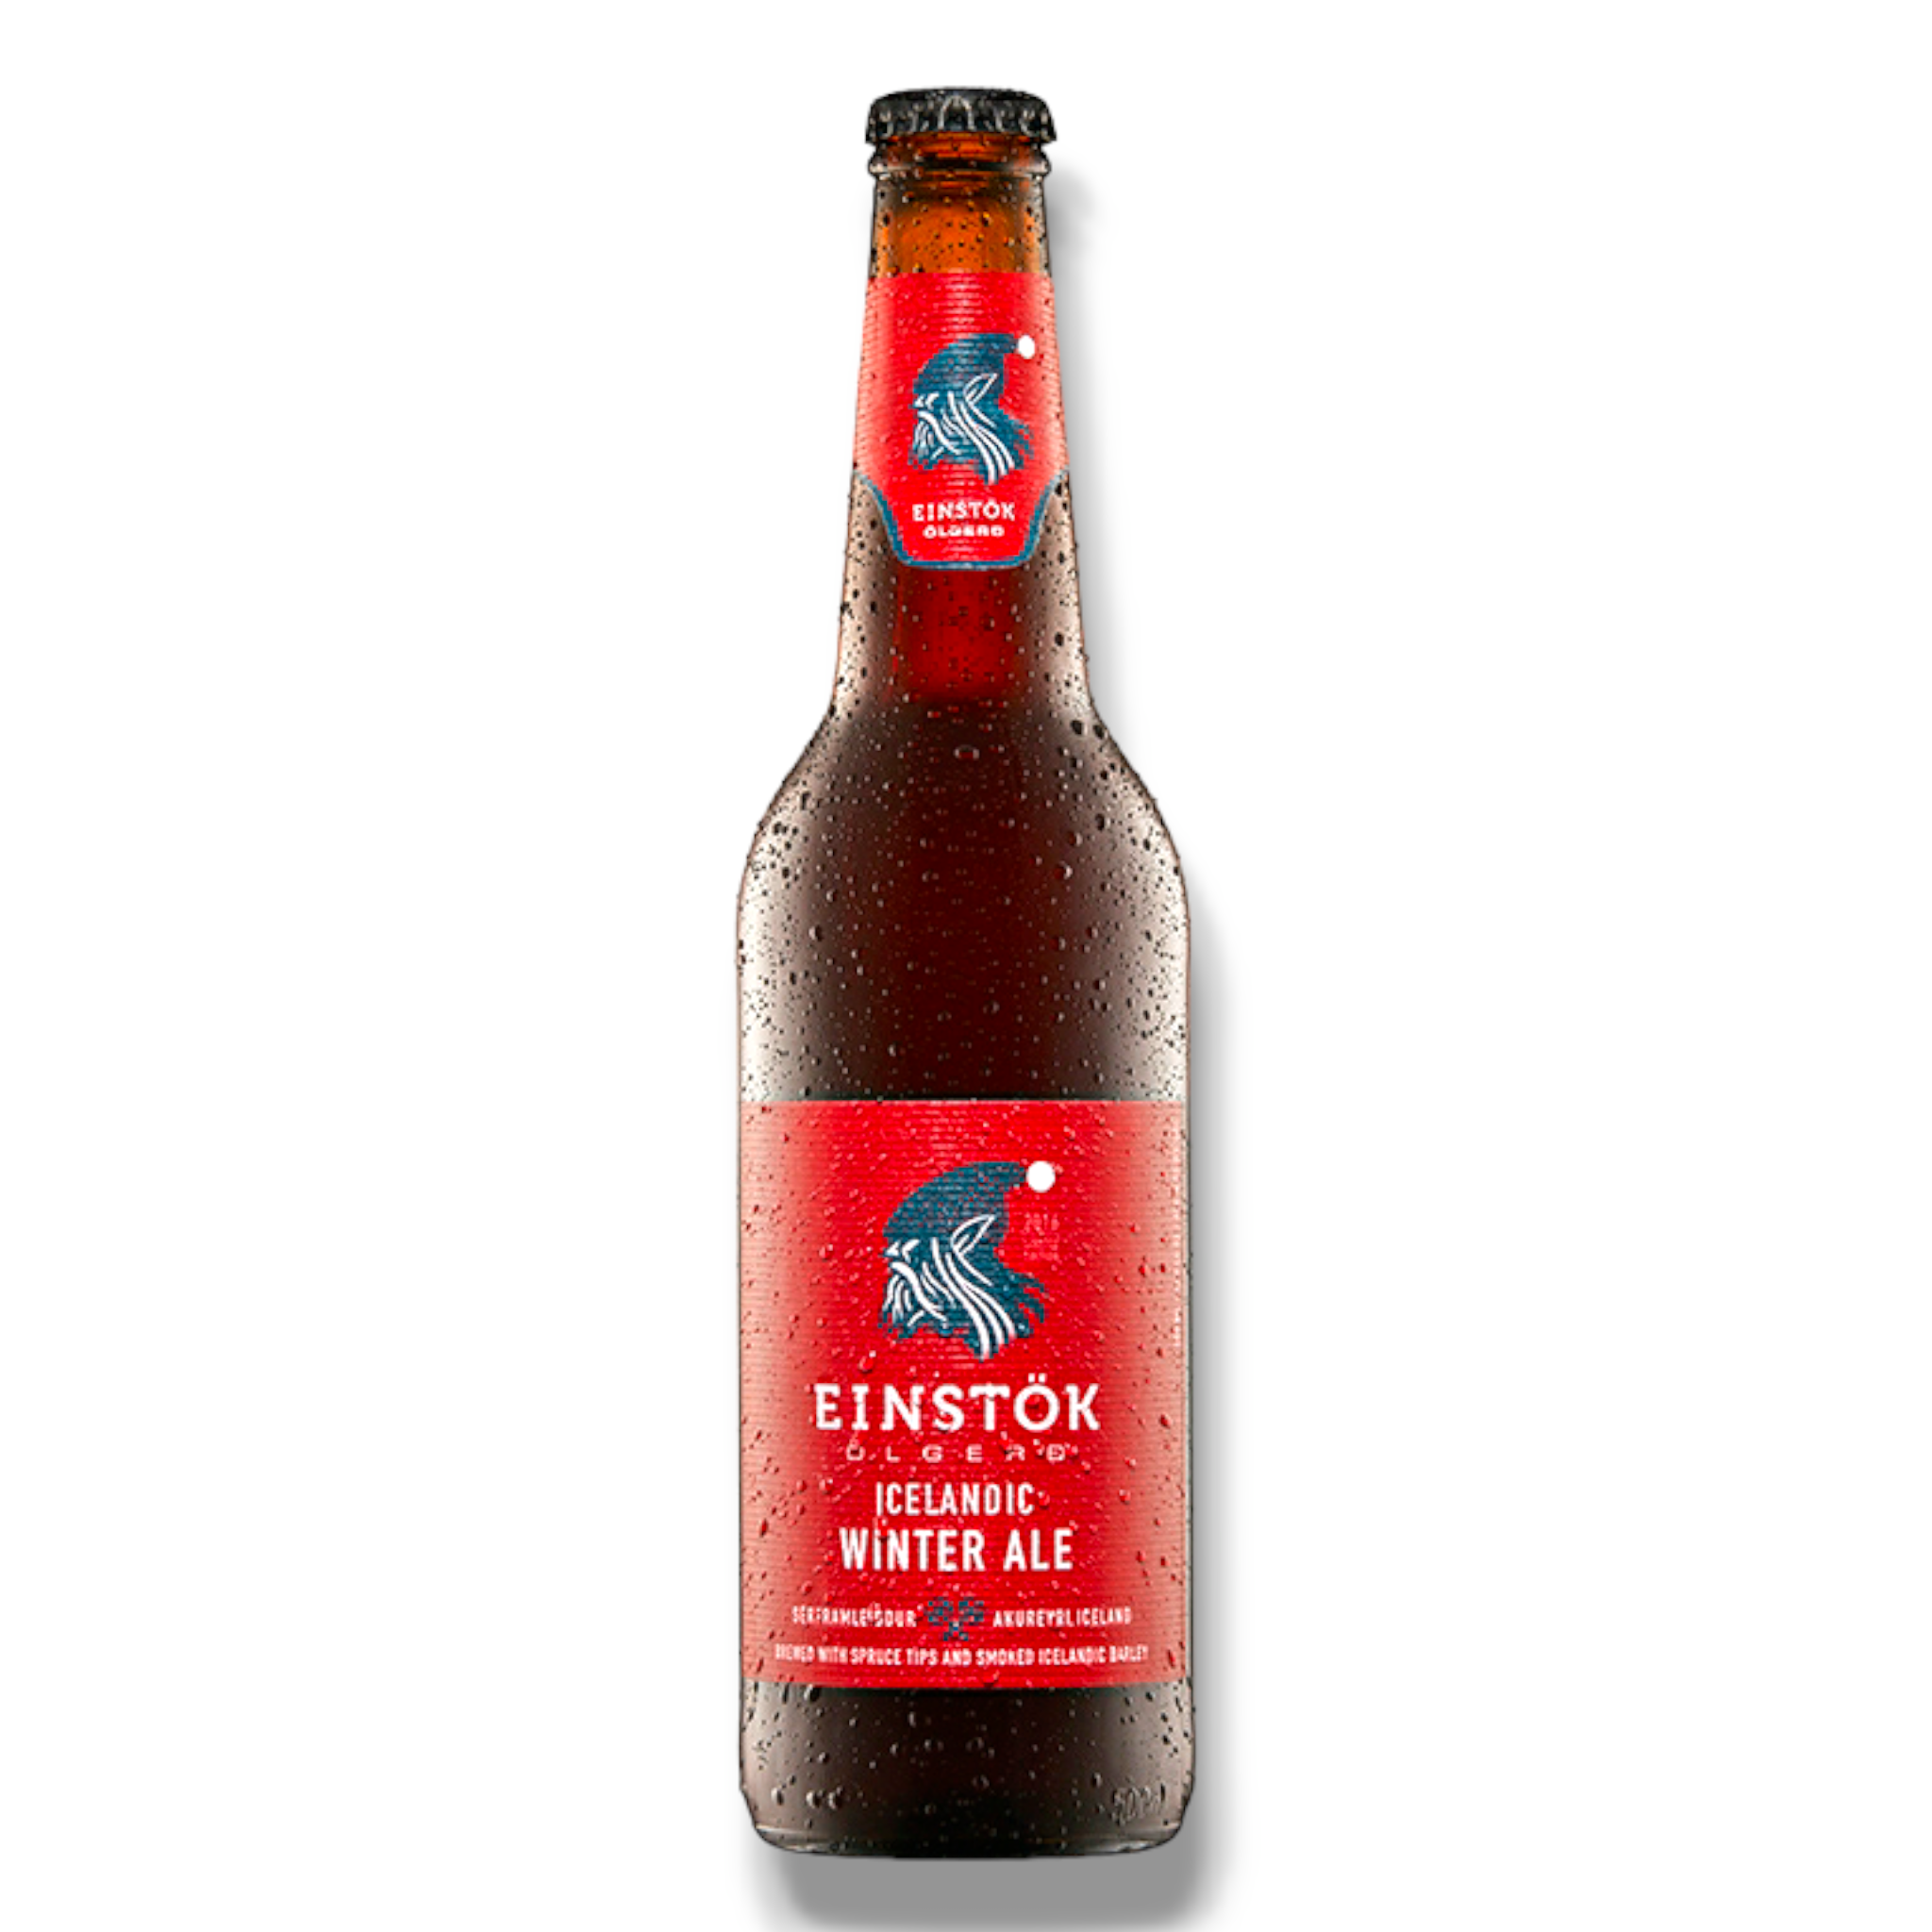 Einstök Icelandic Winter Ale 0,33l - Winterbier aus Island mit 8% Vol.